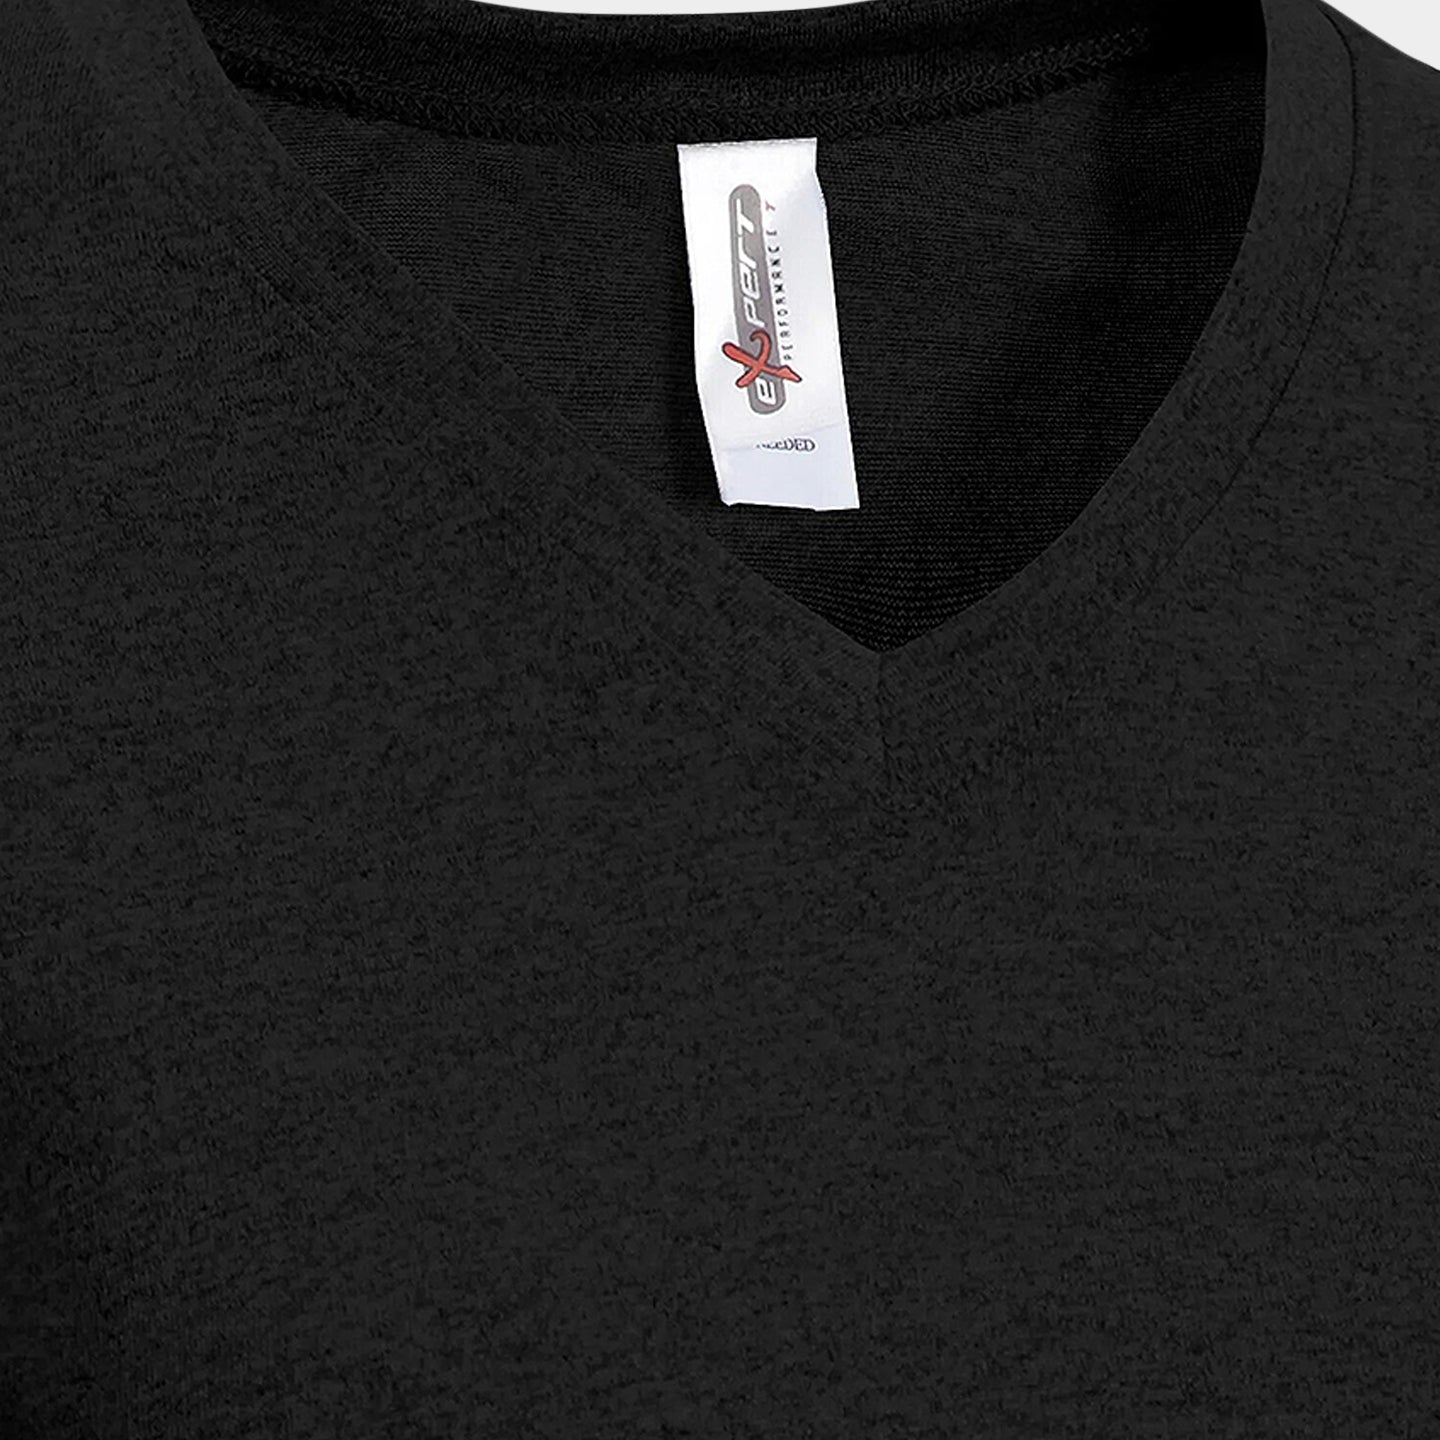 Expert Brand Women's Natural-Feel Jersey V-Neck T-Shirt, L, Black A2